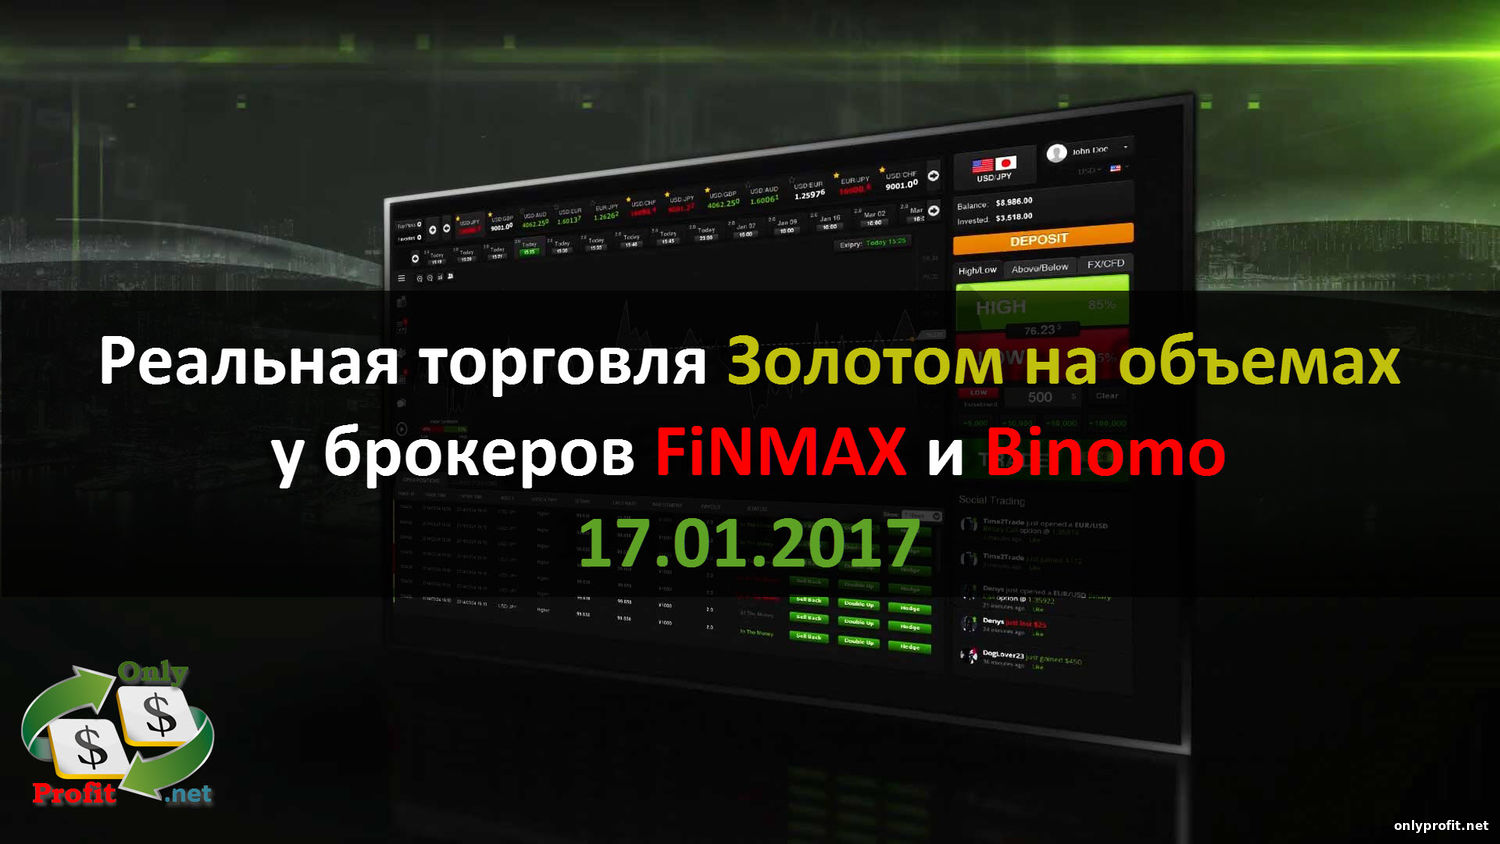 Реальная торговля у брокеров FINMAX и Binomo за 17.01.2017